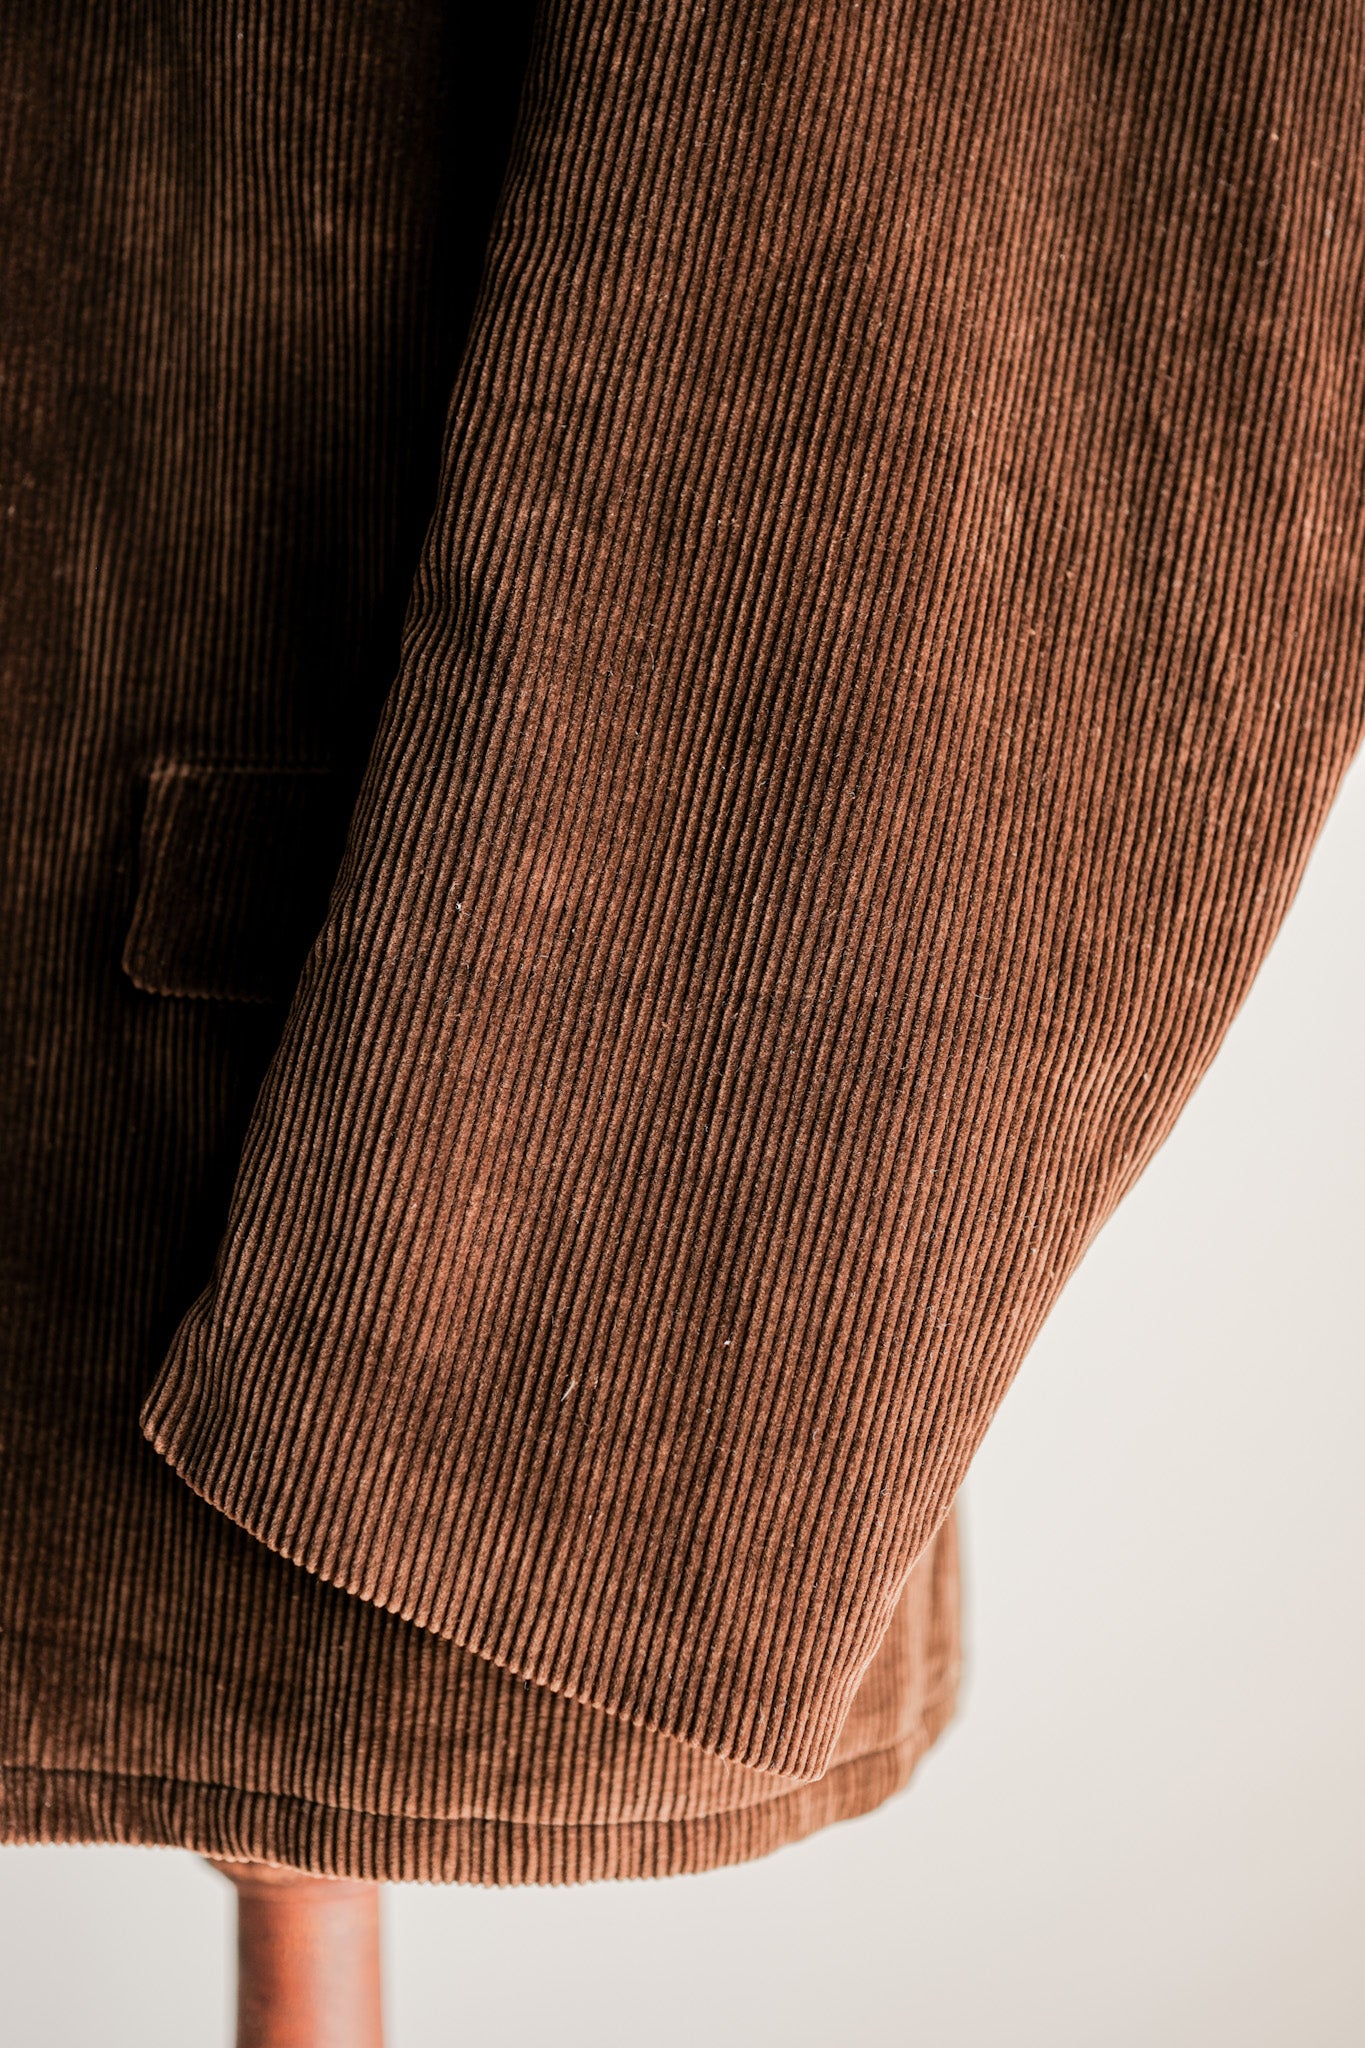 [~ 50 년대] 프랑스 빈티지 브라운 코듀로이 작업 재킷 크기.